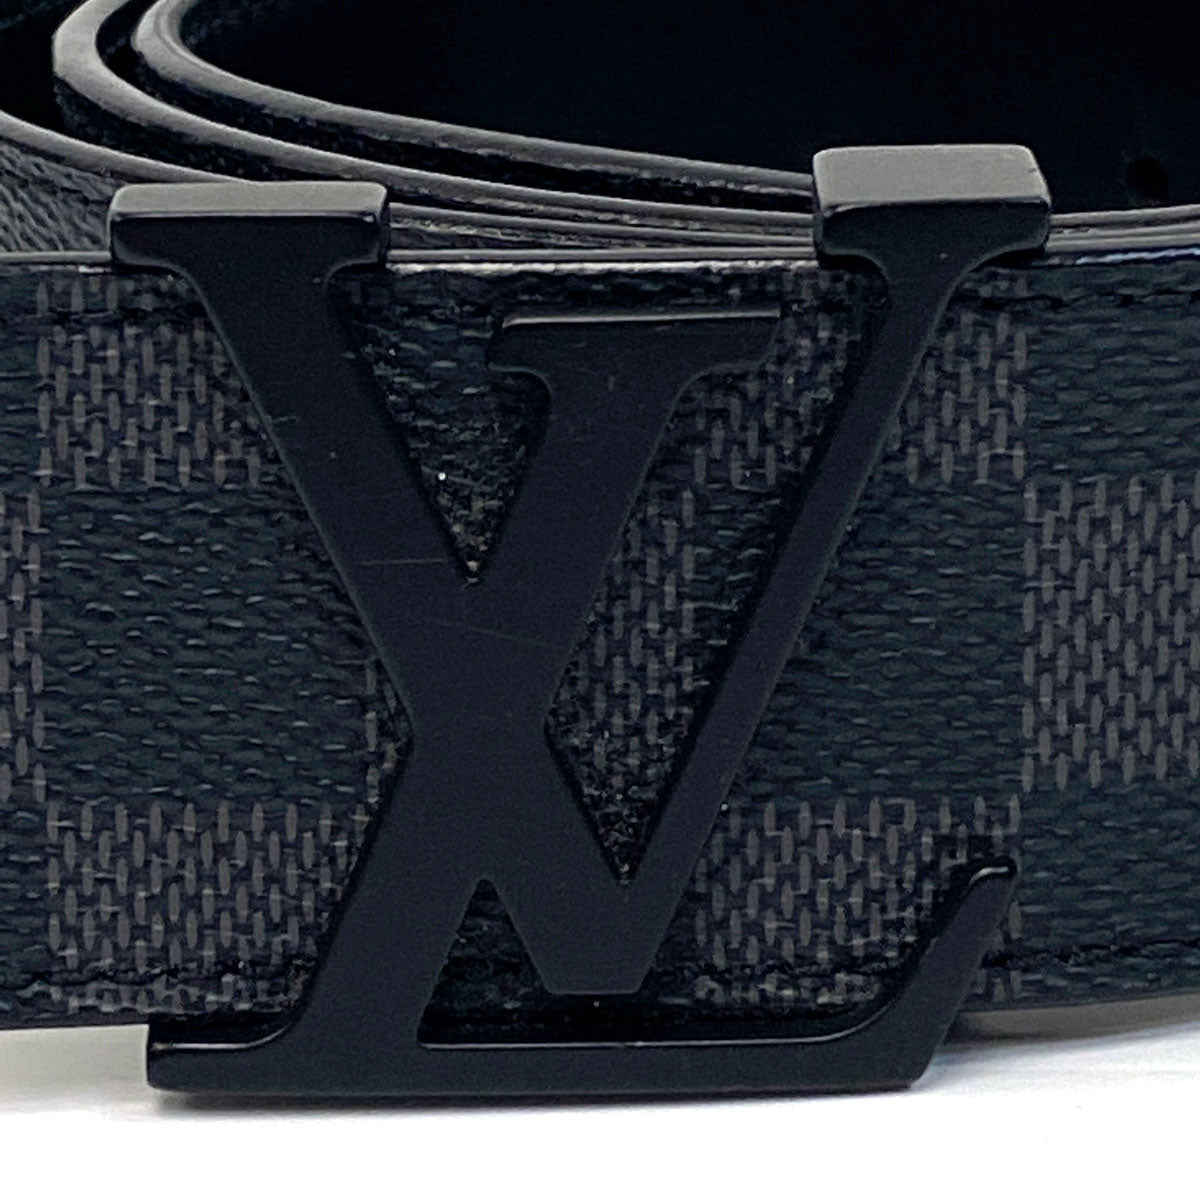 Louis Vuitton Lv Initiales 40mm Reversible Belt for Men